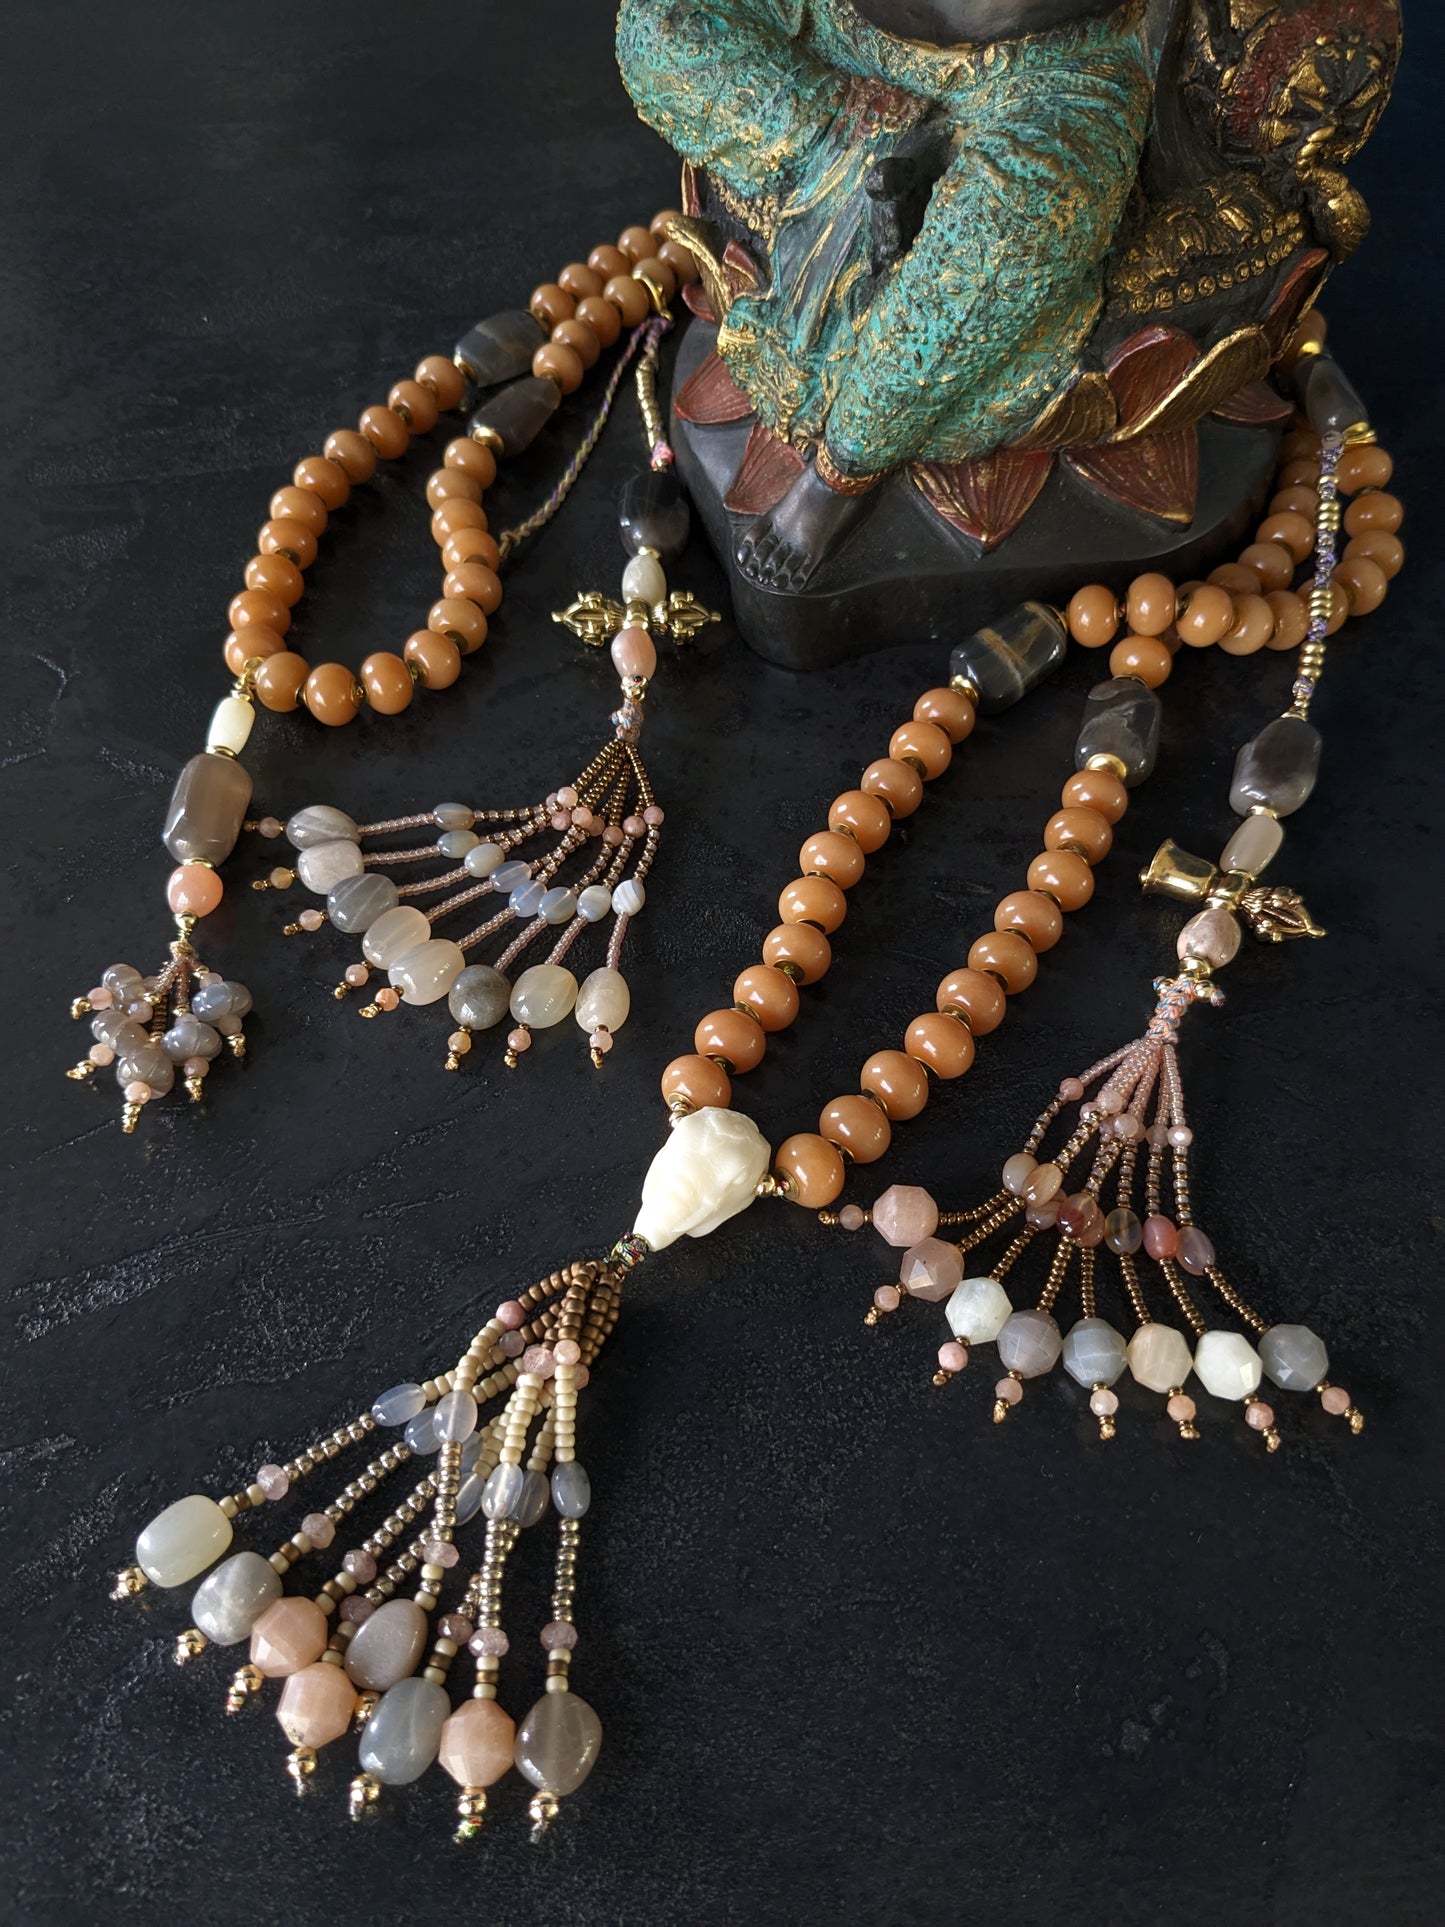 Image d'un magnifique collier Mala Ayodhya, soigneusement placé sur une surface en bois rustique sous une lumière douce et chaleureuse, mettant en valeur ses perles de racine de Bodhi miel naturelles et ses perles de pierre de lune grise. Le design complexe et le savoir-faire artisanal du collier sont mis en évidence.